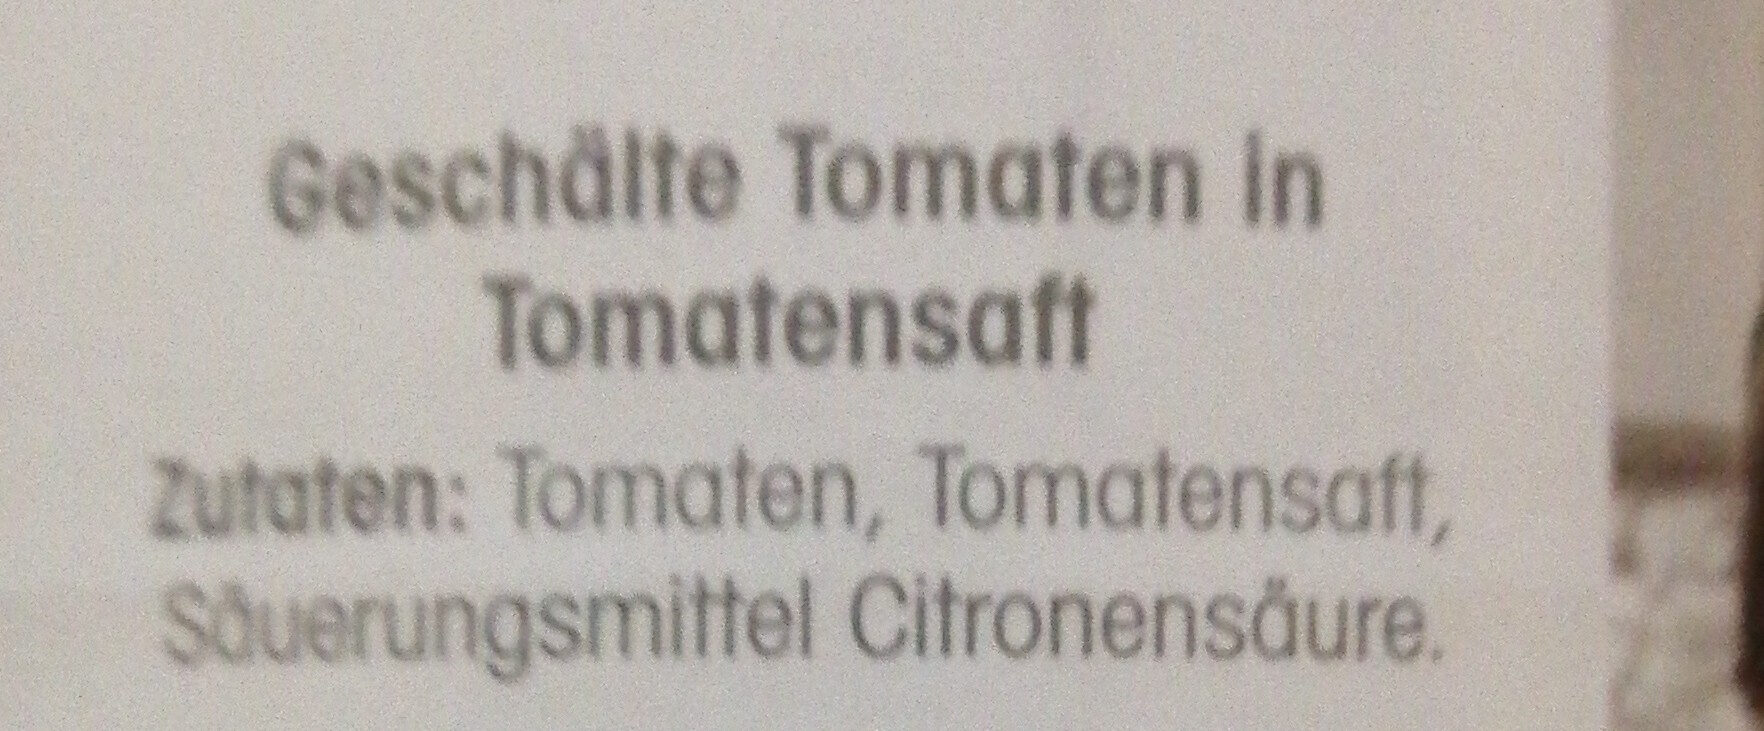 Geschälte Tomaten in Tomatensaft - Ingredients - de